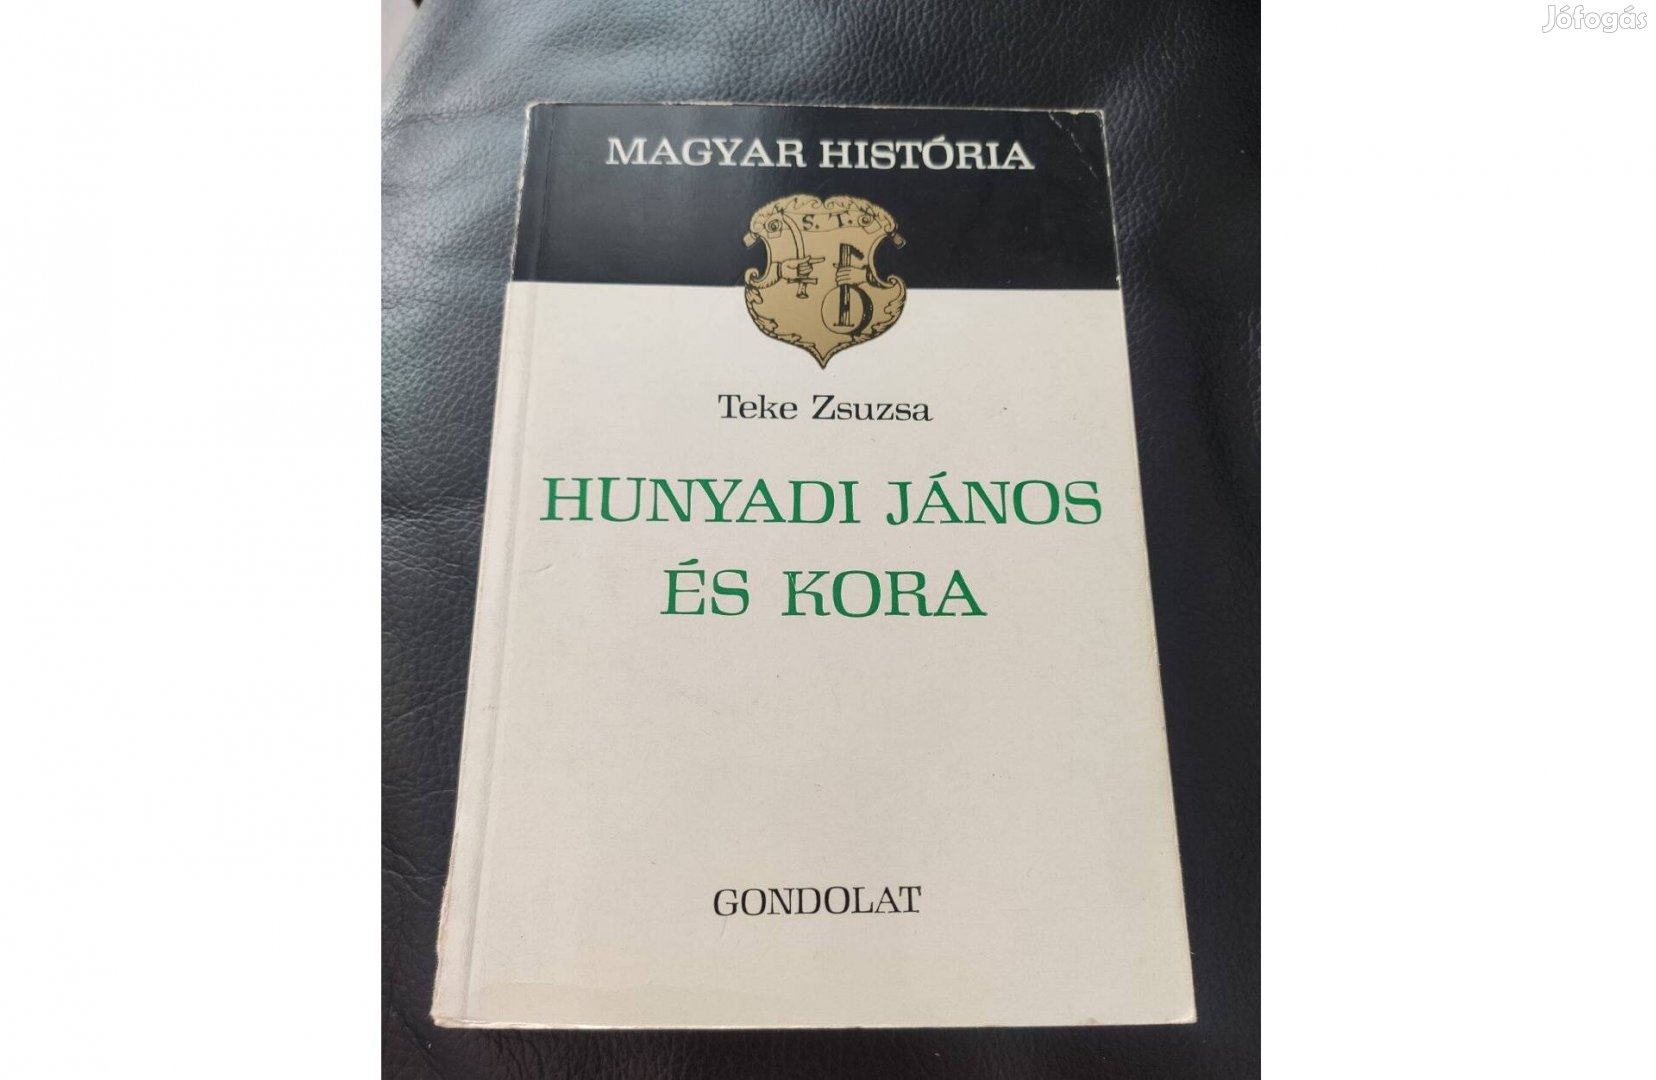 Teke Zsuzsa: Hunyadi János és kora - Magyar História